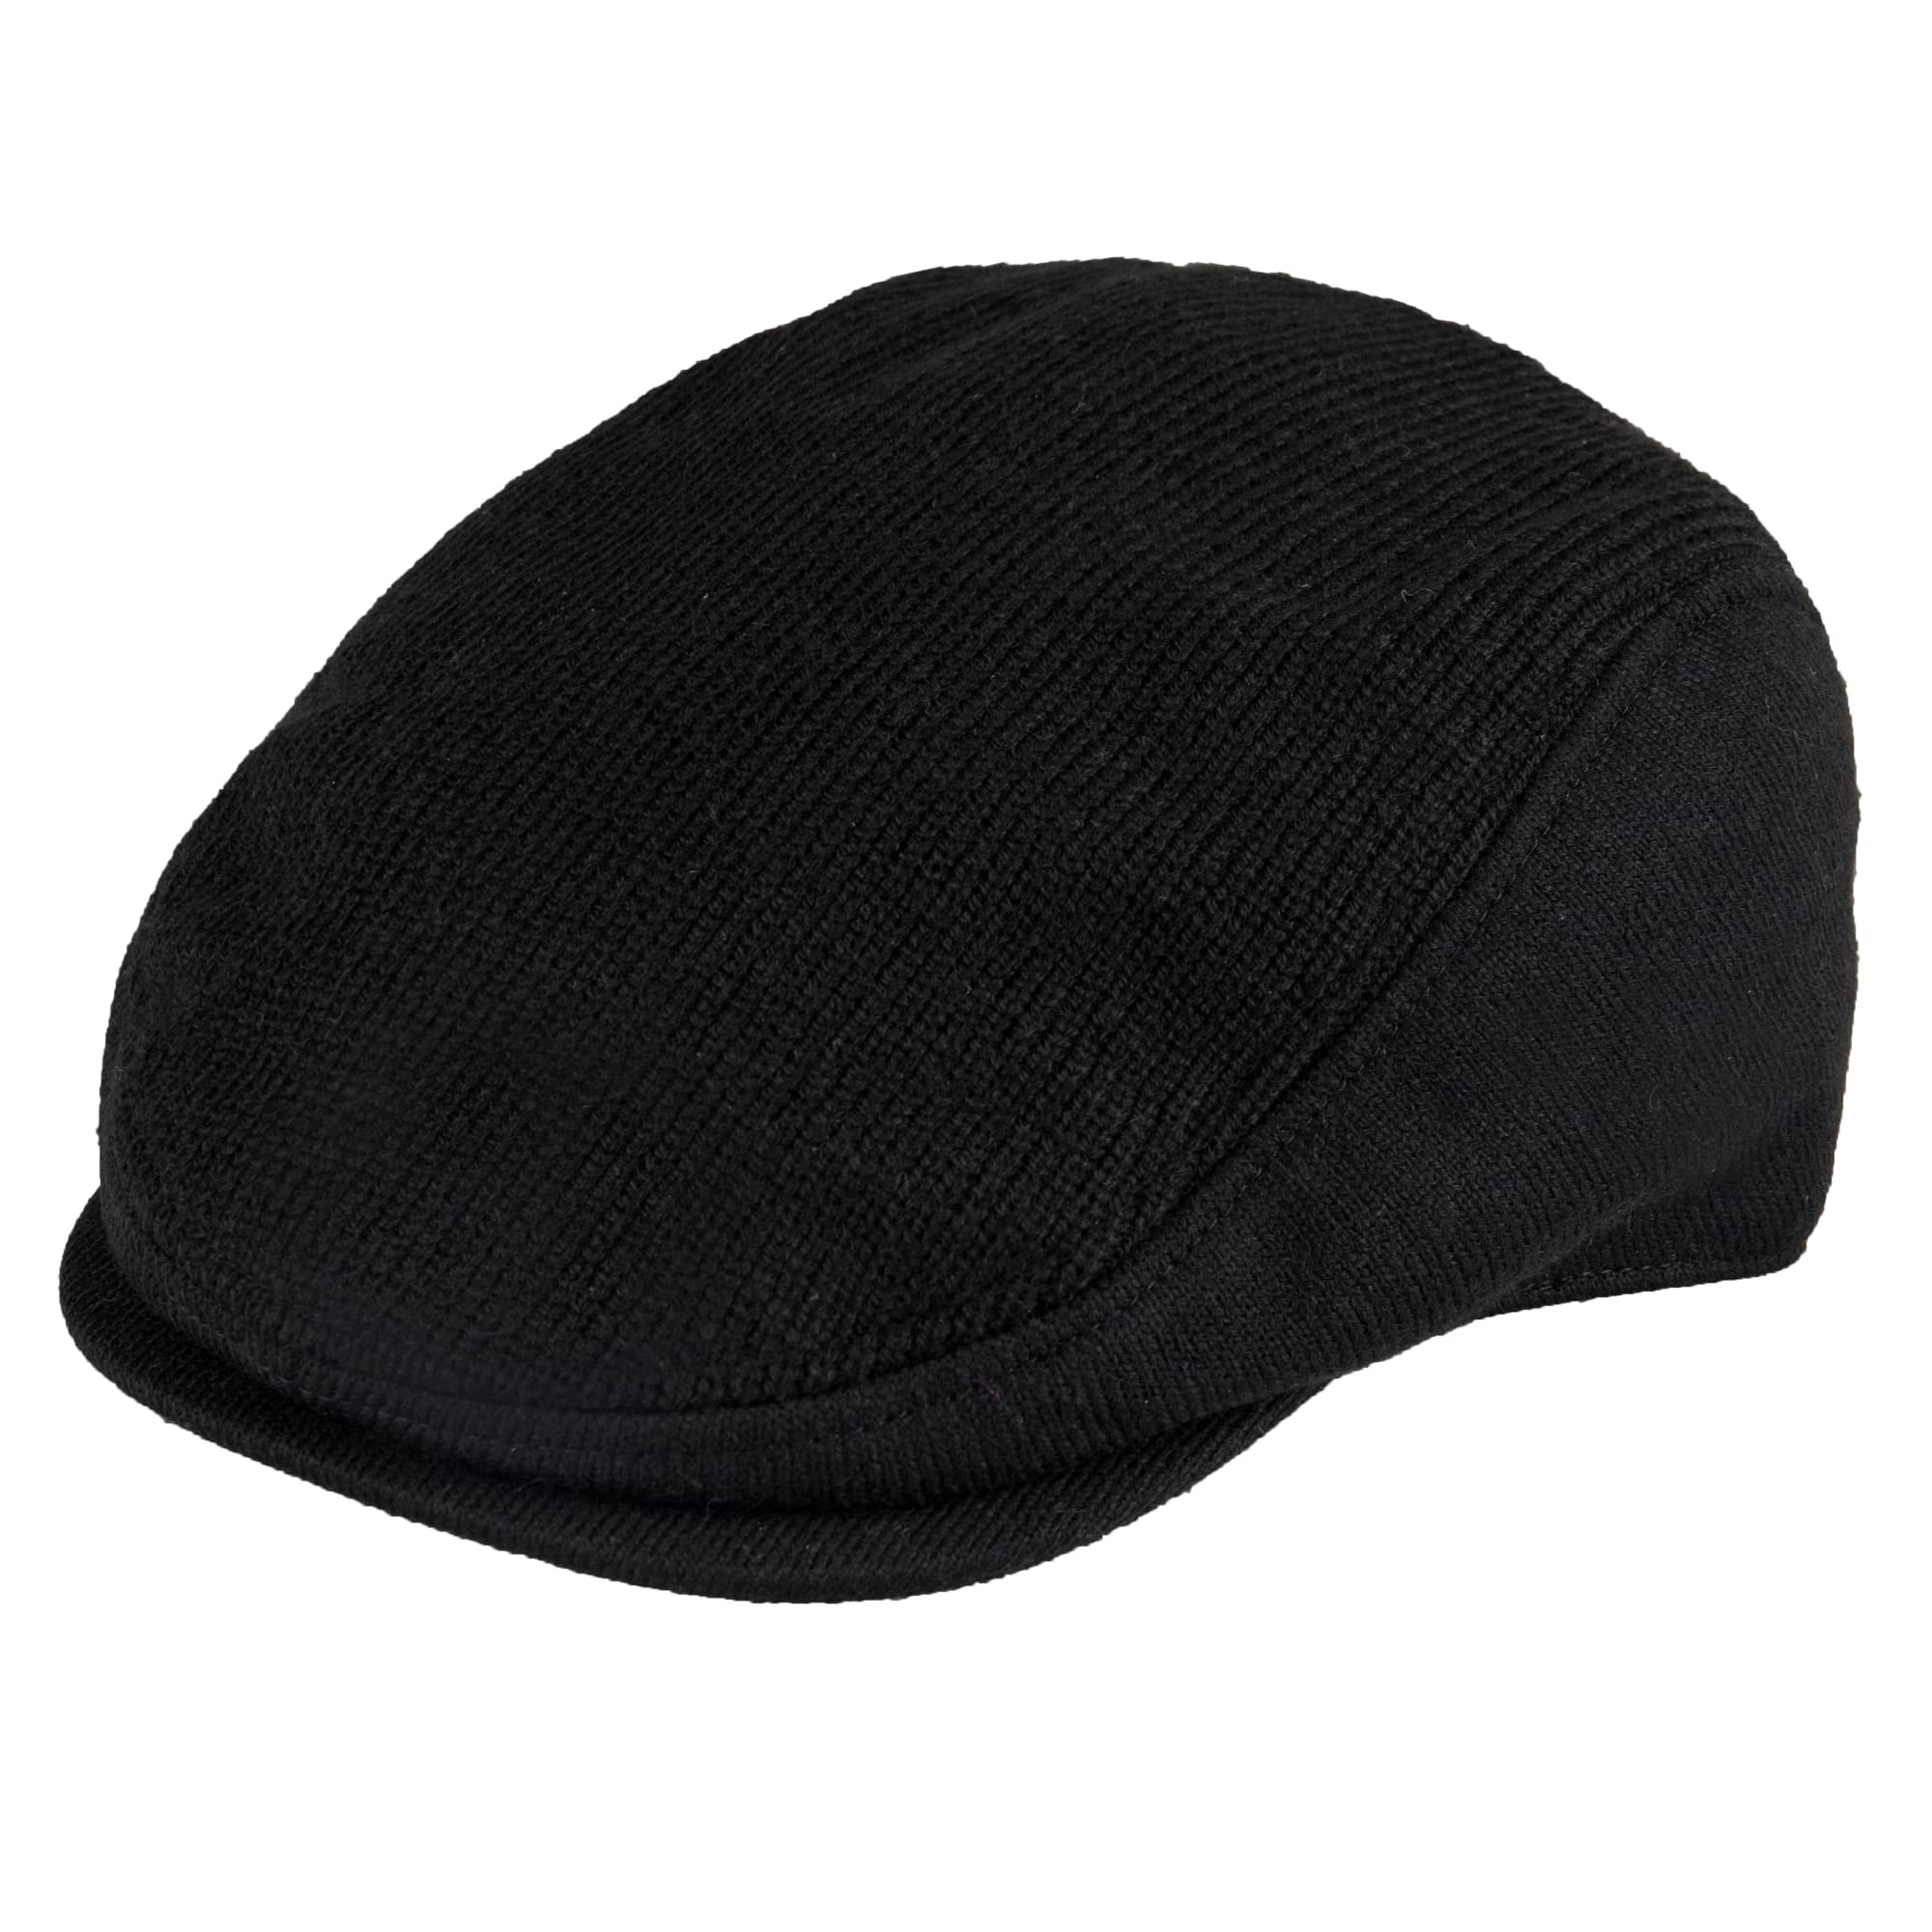 Mua Levi's Mens Classic Ivy Newsboy Hat trên Amazon Mỹ chính hãng 2023 |  Giaonhan247